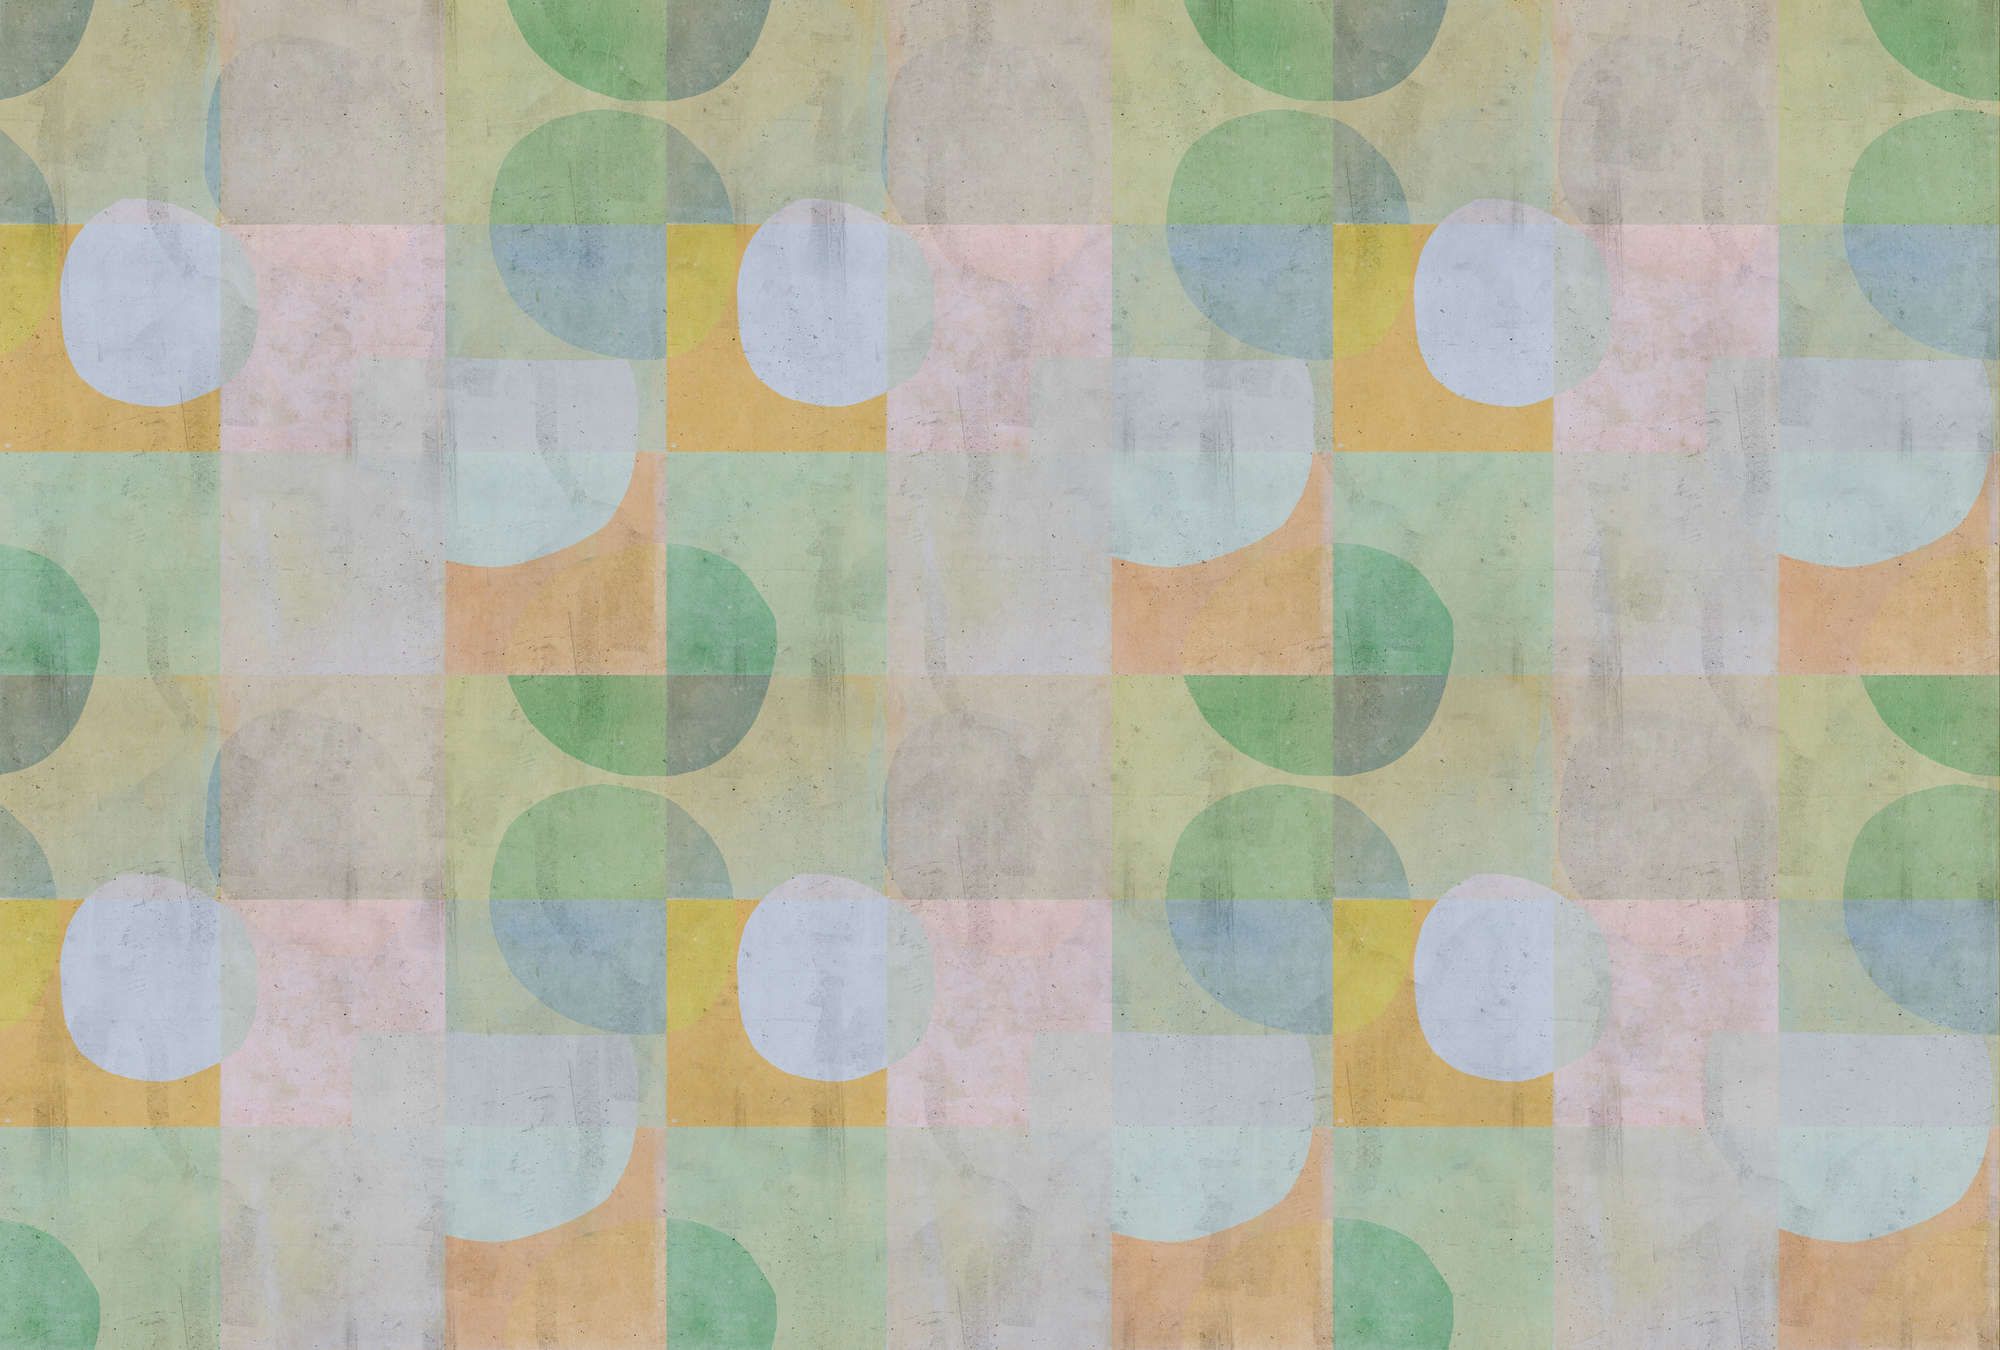             papier peint en papier panoramique »elija 1« - motif rétro dans des couleurs pâles avec aspect béton - vert, bleu, rose | Intissé lisse, légèrement nacré
        